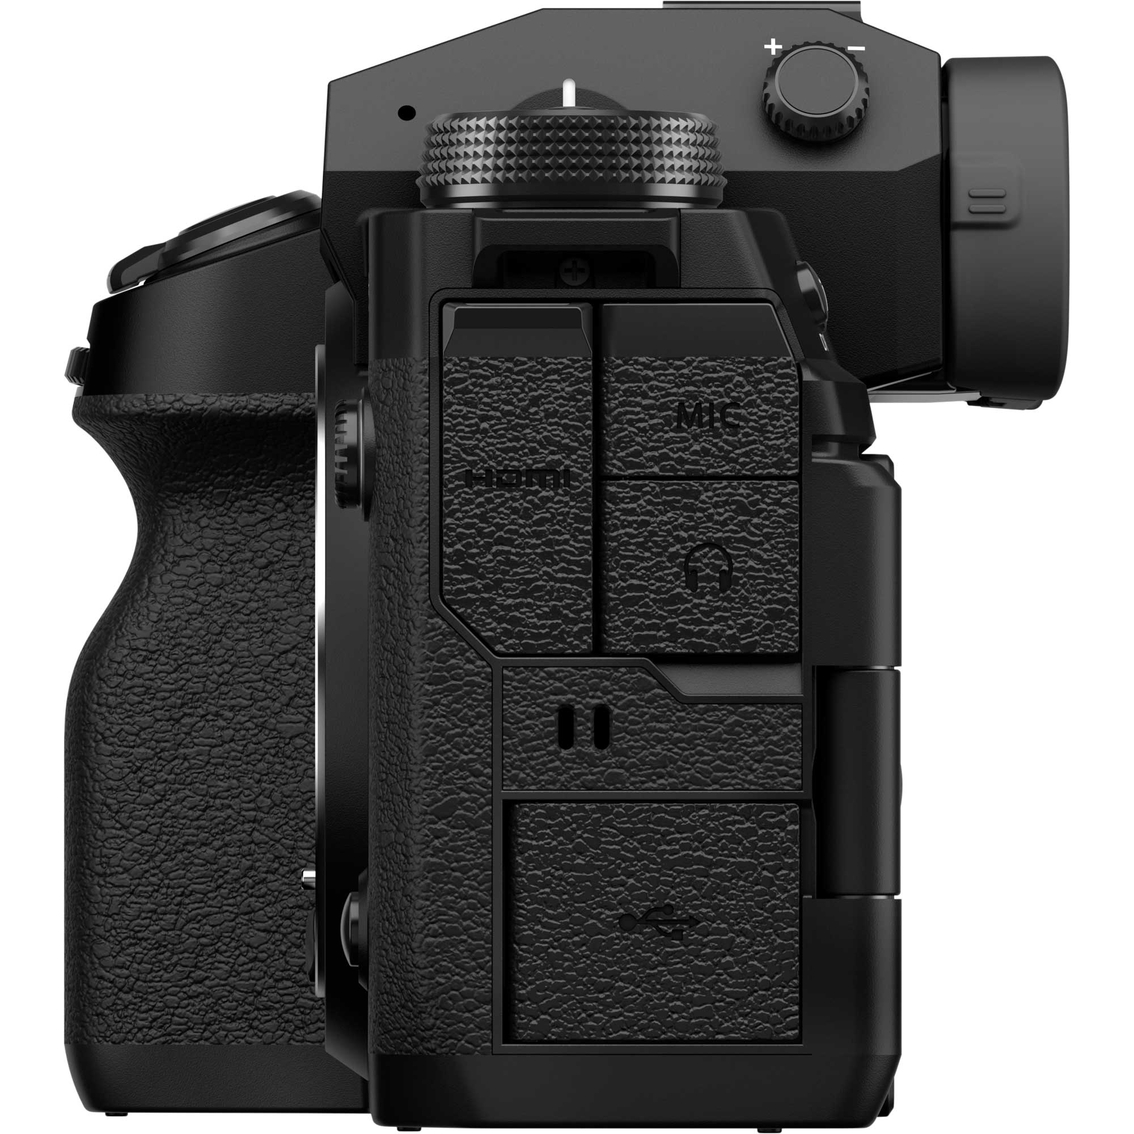 Fujifilm XH2 Camera Body, Black - Image 5 of 7